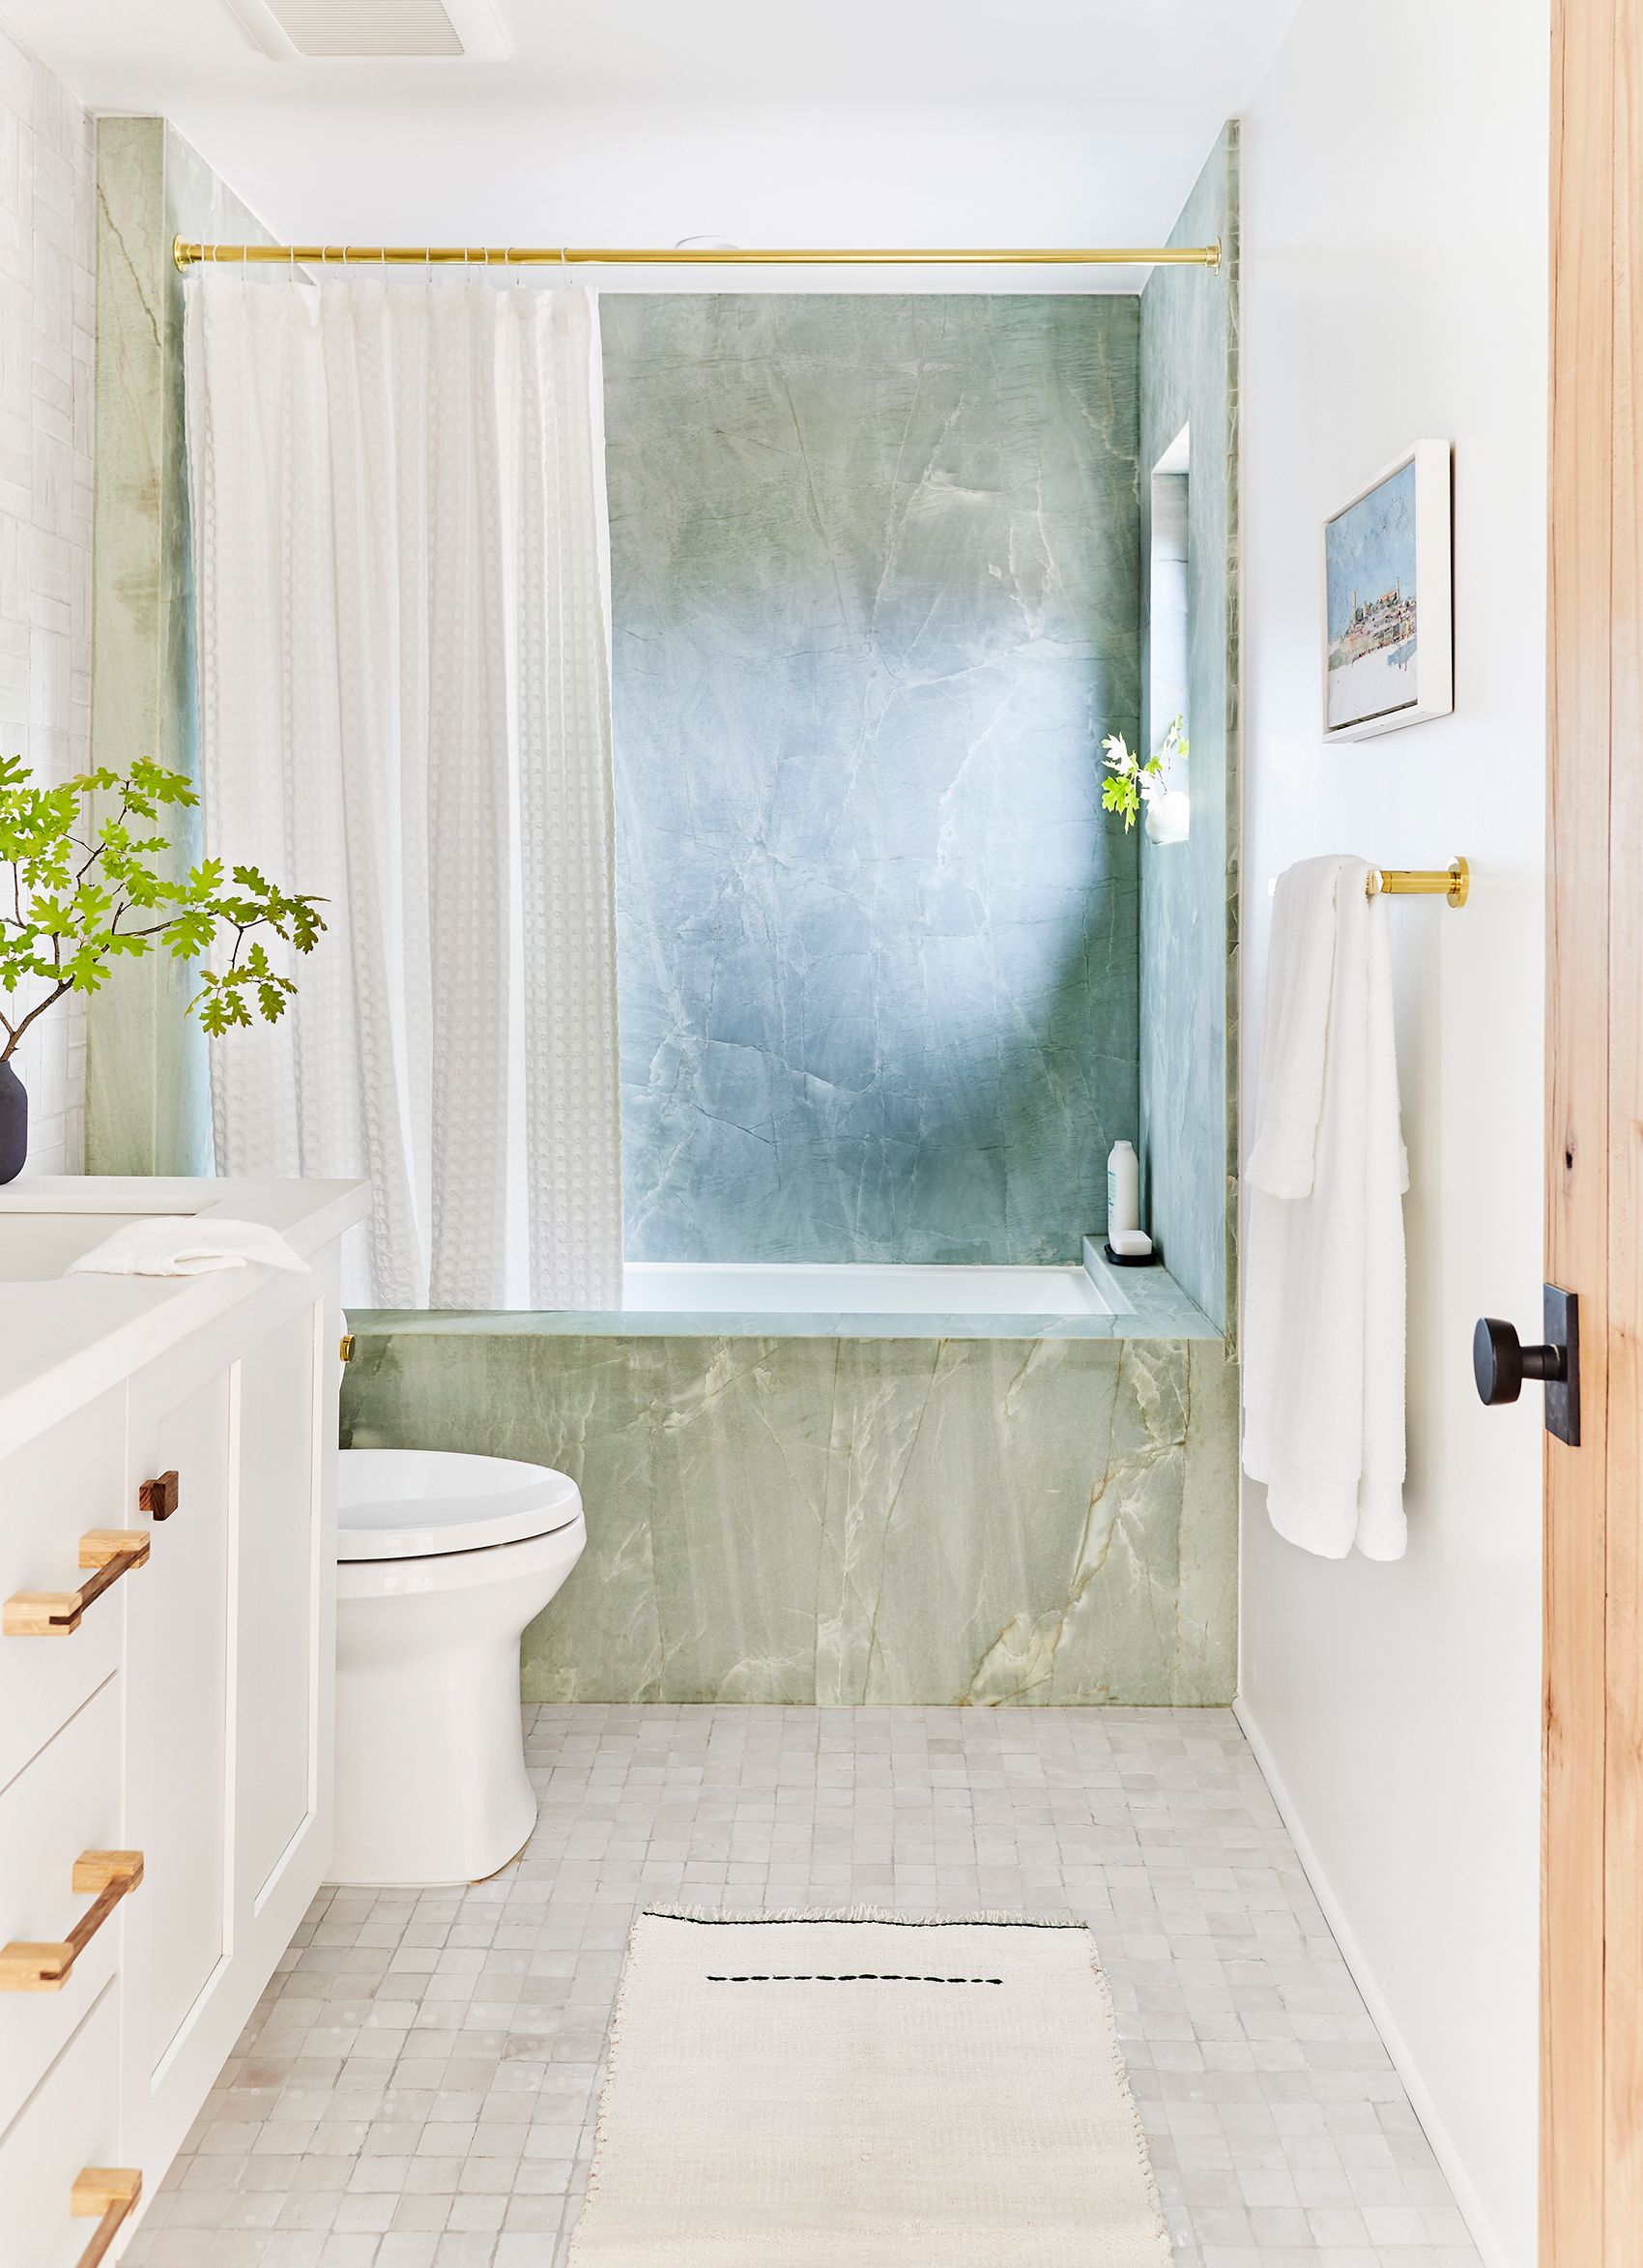 48 Bathroom Tile Ideas Bath, What Is The Best Floor Tile For A Small Bathroom